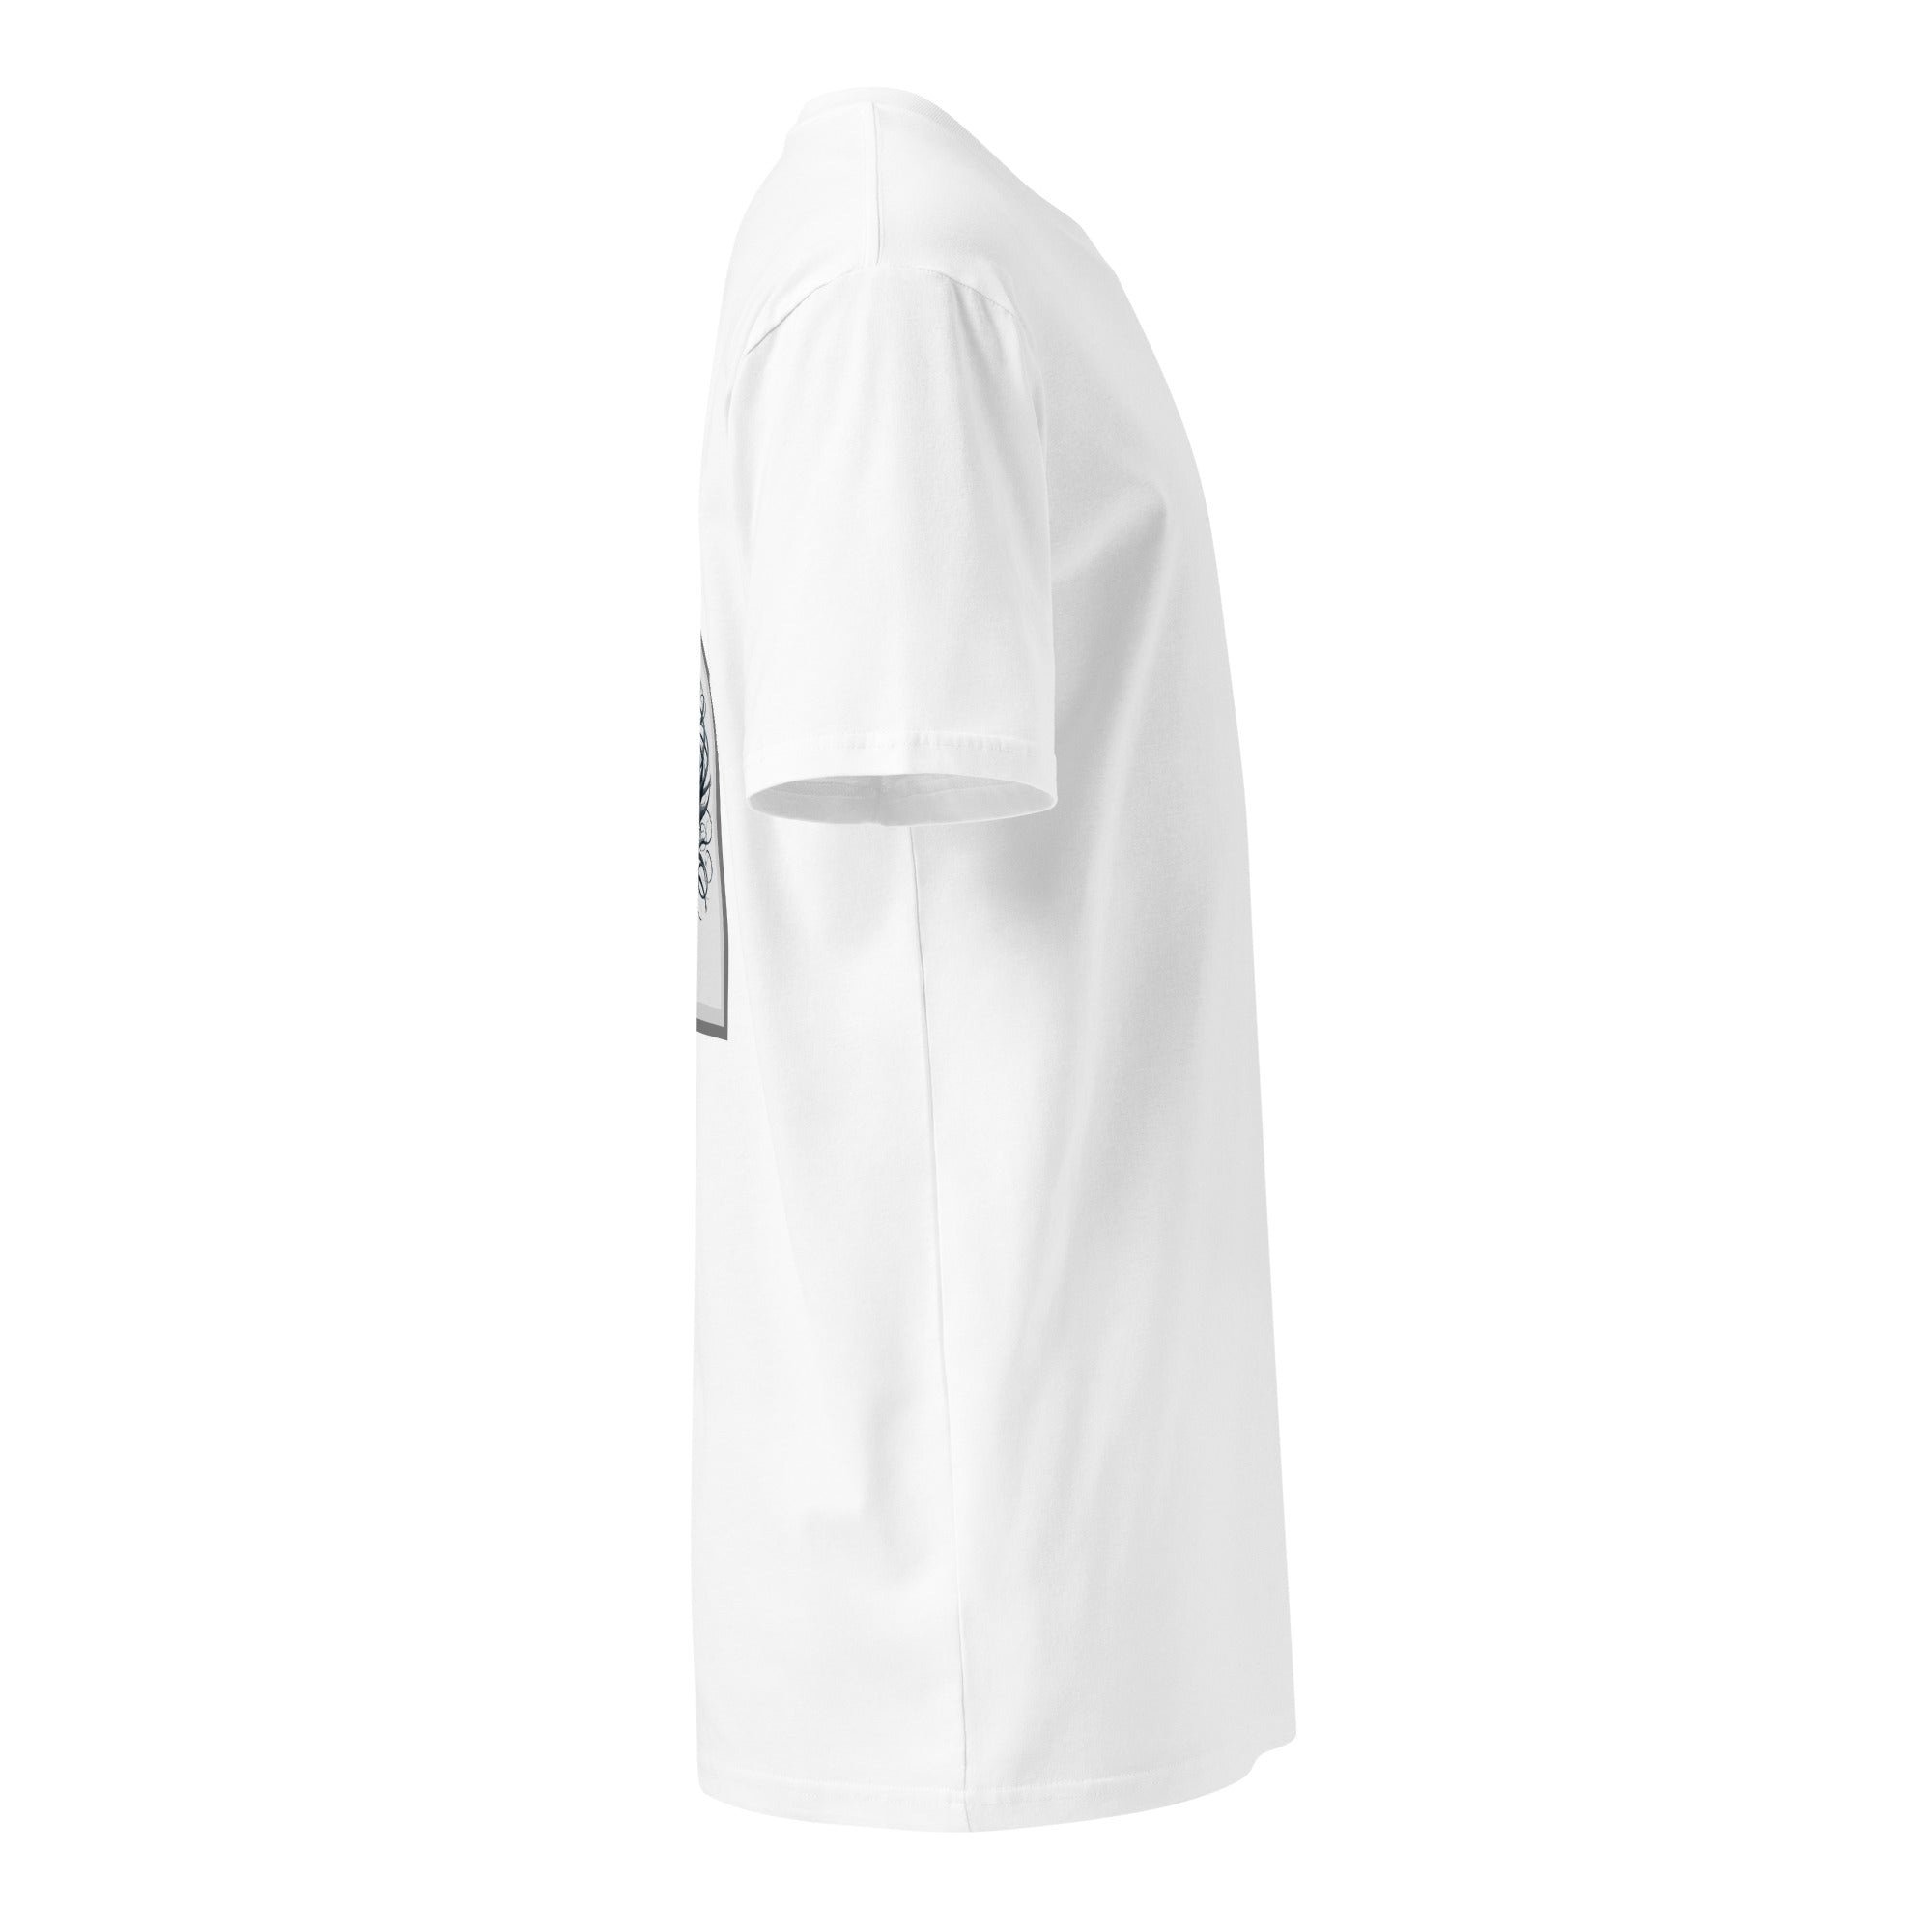 Ethereal - Women's White Premium T-shirt - Women's T-shirt - DRAGON FOXX™ - Ethereal - Women's White Premium T-shirt - 4578534_18793 - S - White - 100% Combed Cotton - Dragon Foxx™ - Dragon Foxx™ Ethereal - Women's White Premium T-shirt - Ethereal